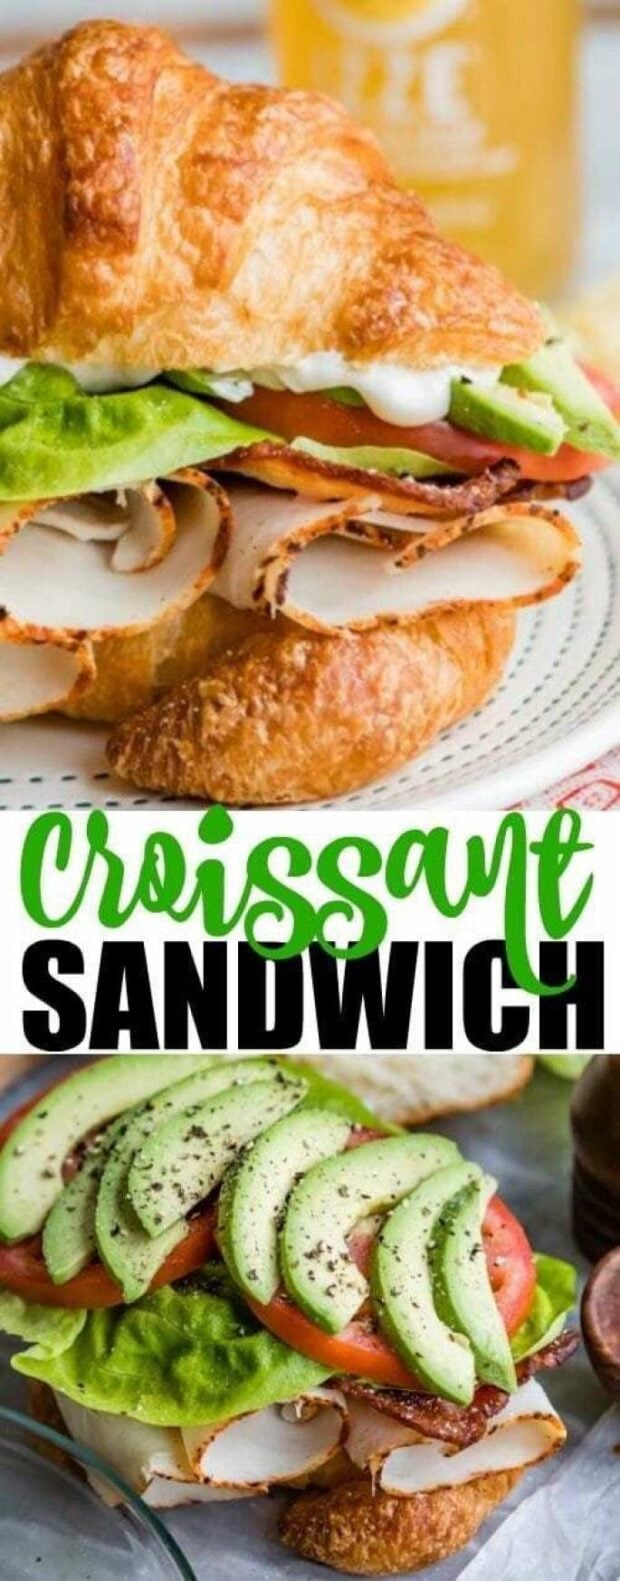 Best Croissant Sandwich Recipes (Part 2) - Sandwich Recipes, Croissant Sandwich Recipes, Croissant